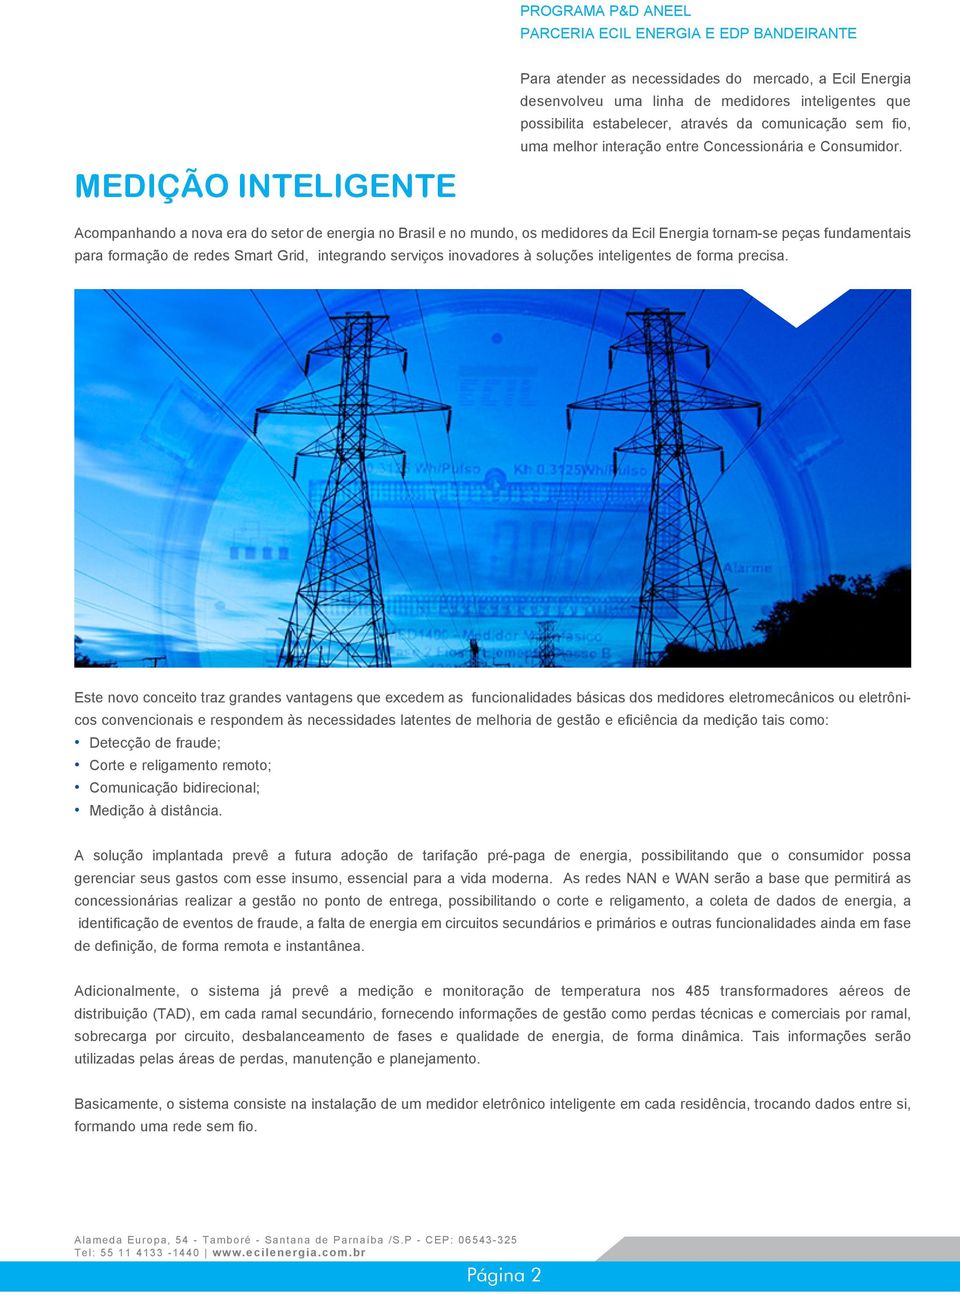 Acompanhando a nova era do setor de energia no Brasil e no mundo, os medidores da Ecil Energia tornam-se peças fundamentais para formação de redes Smart Grid, integrando serviços inovadores à